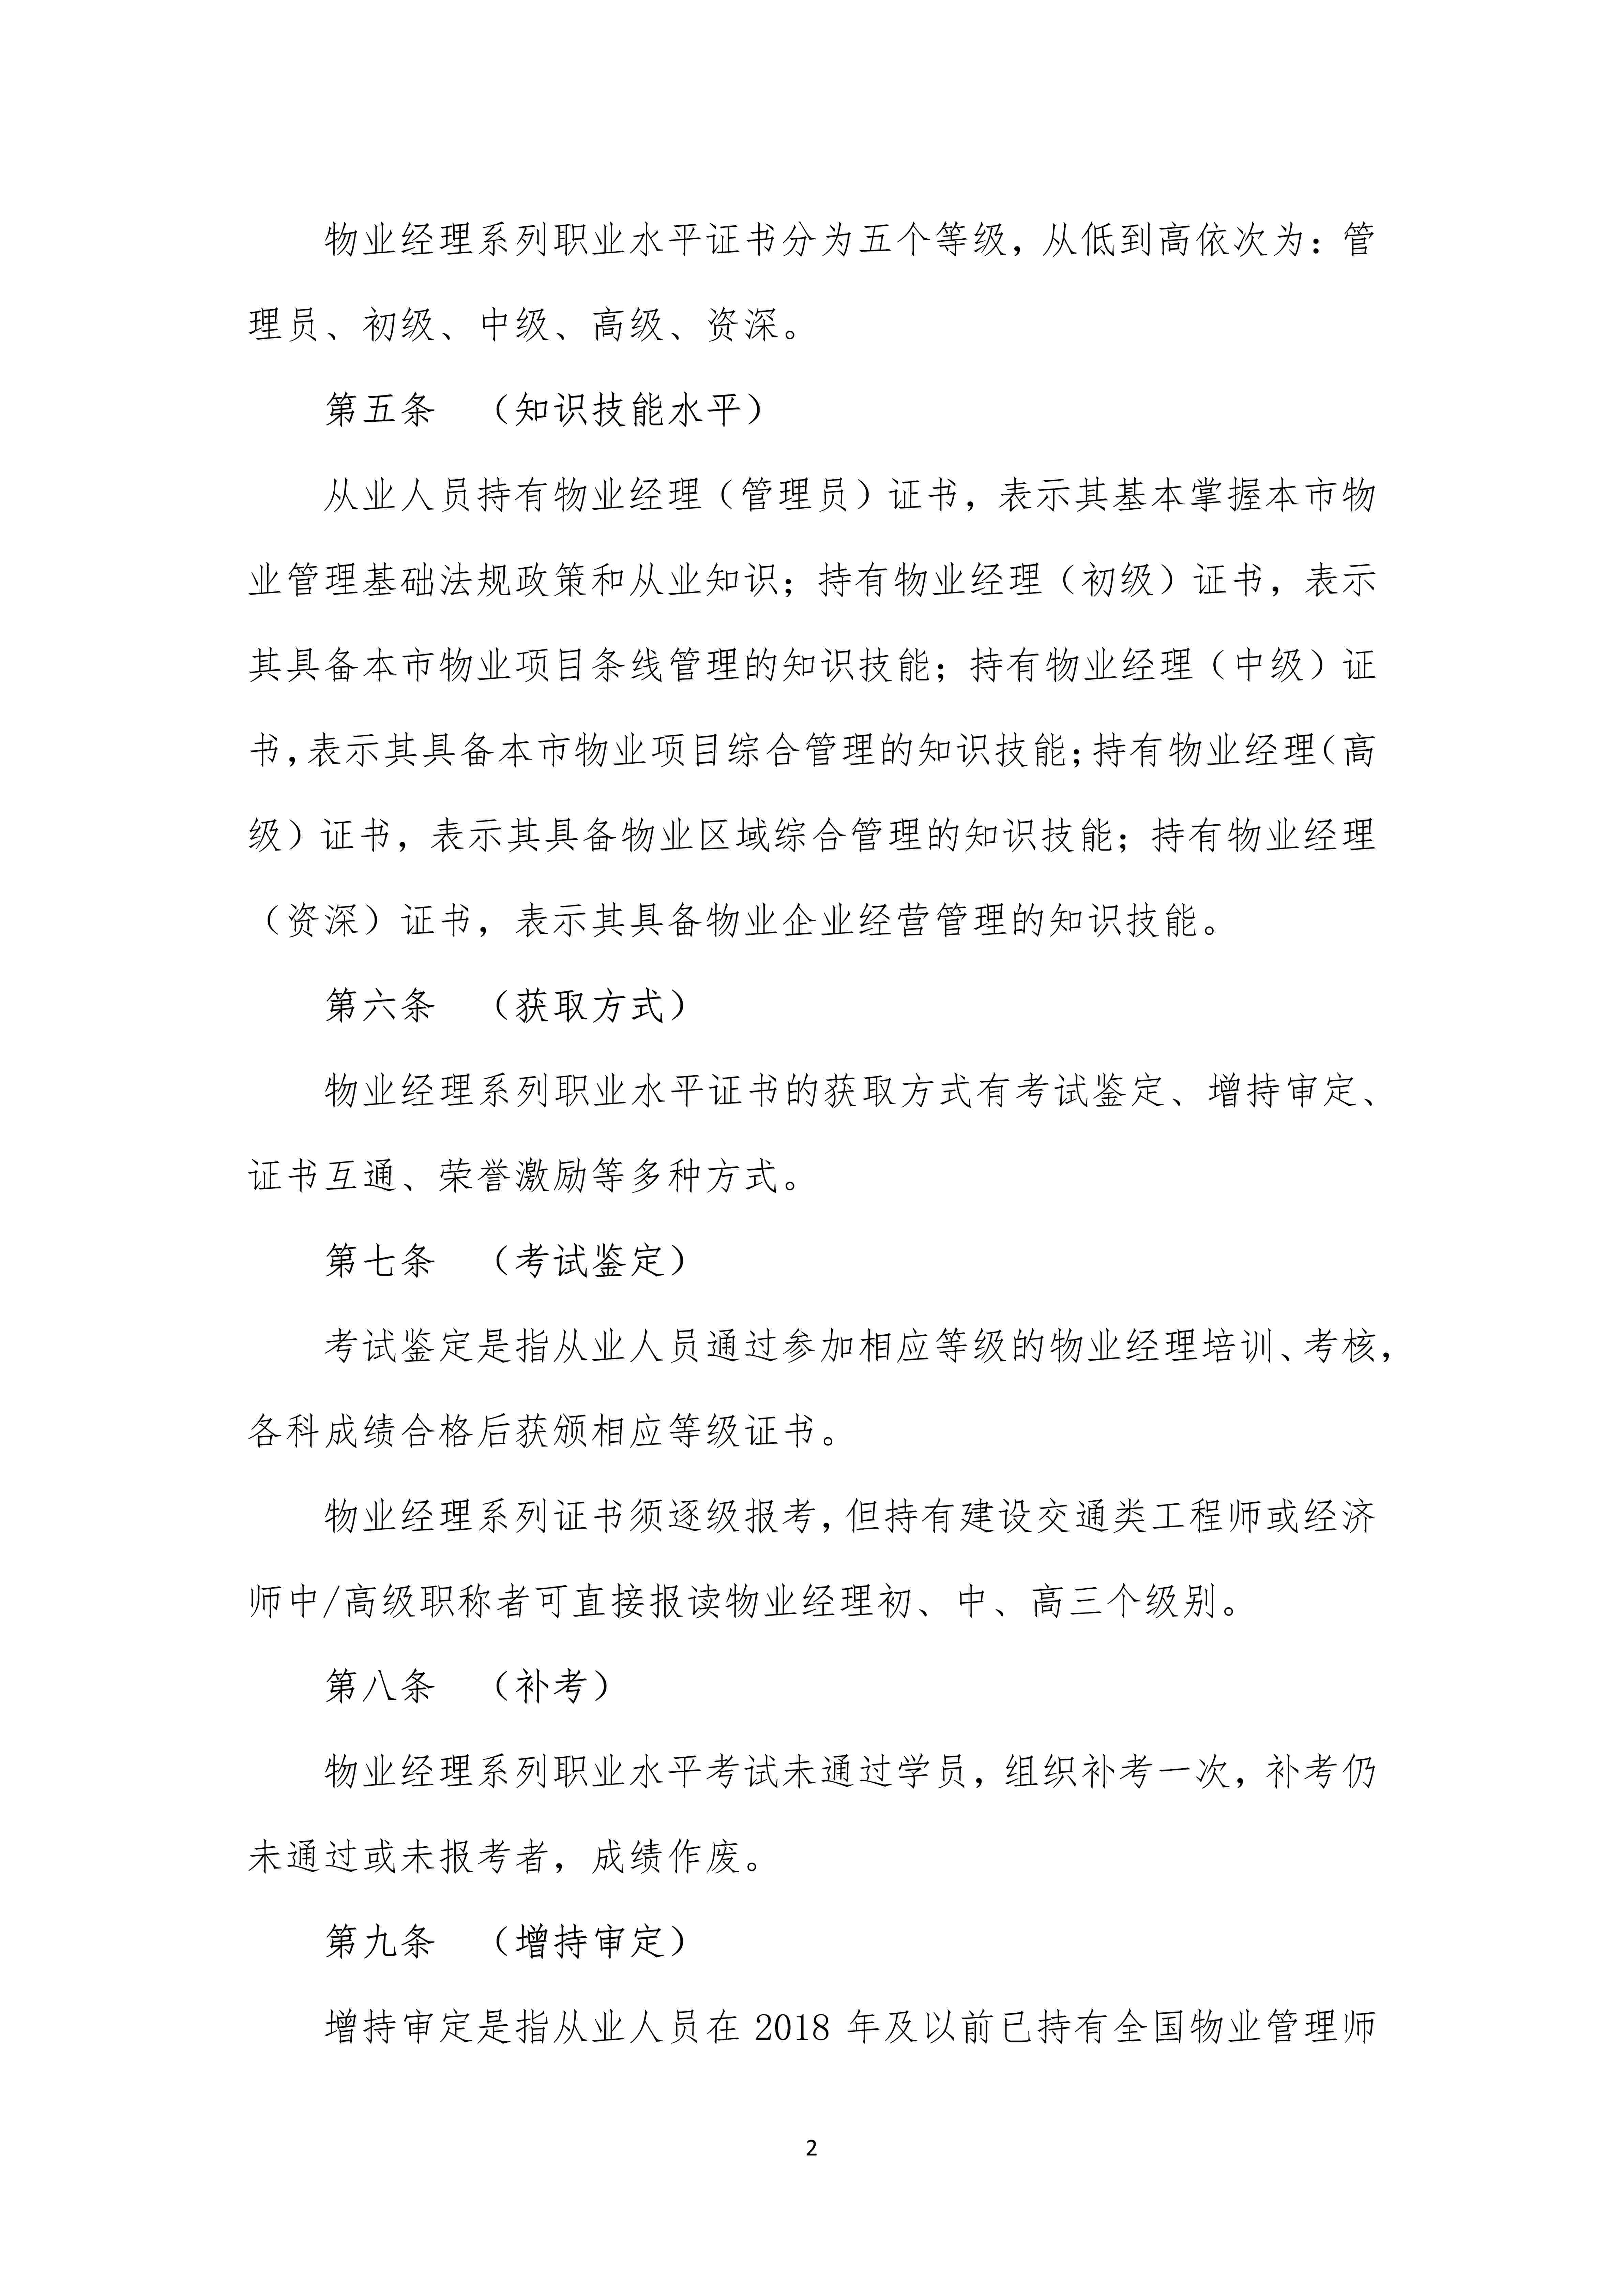 上海市物业管理行业物业经理系列职业水平证书管理办法（定稿）_2.jpg-2022-07-06-09-56-34-028.jpg